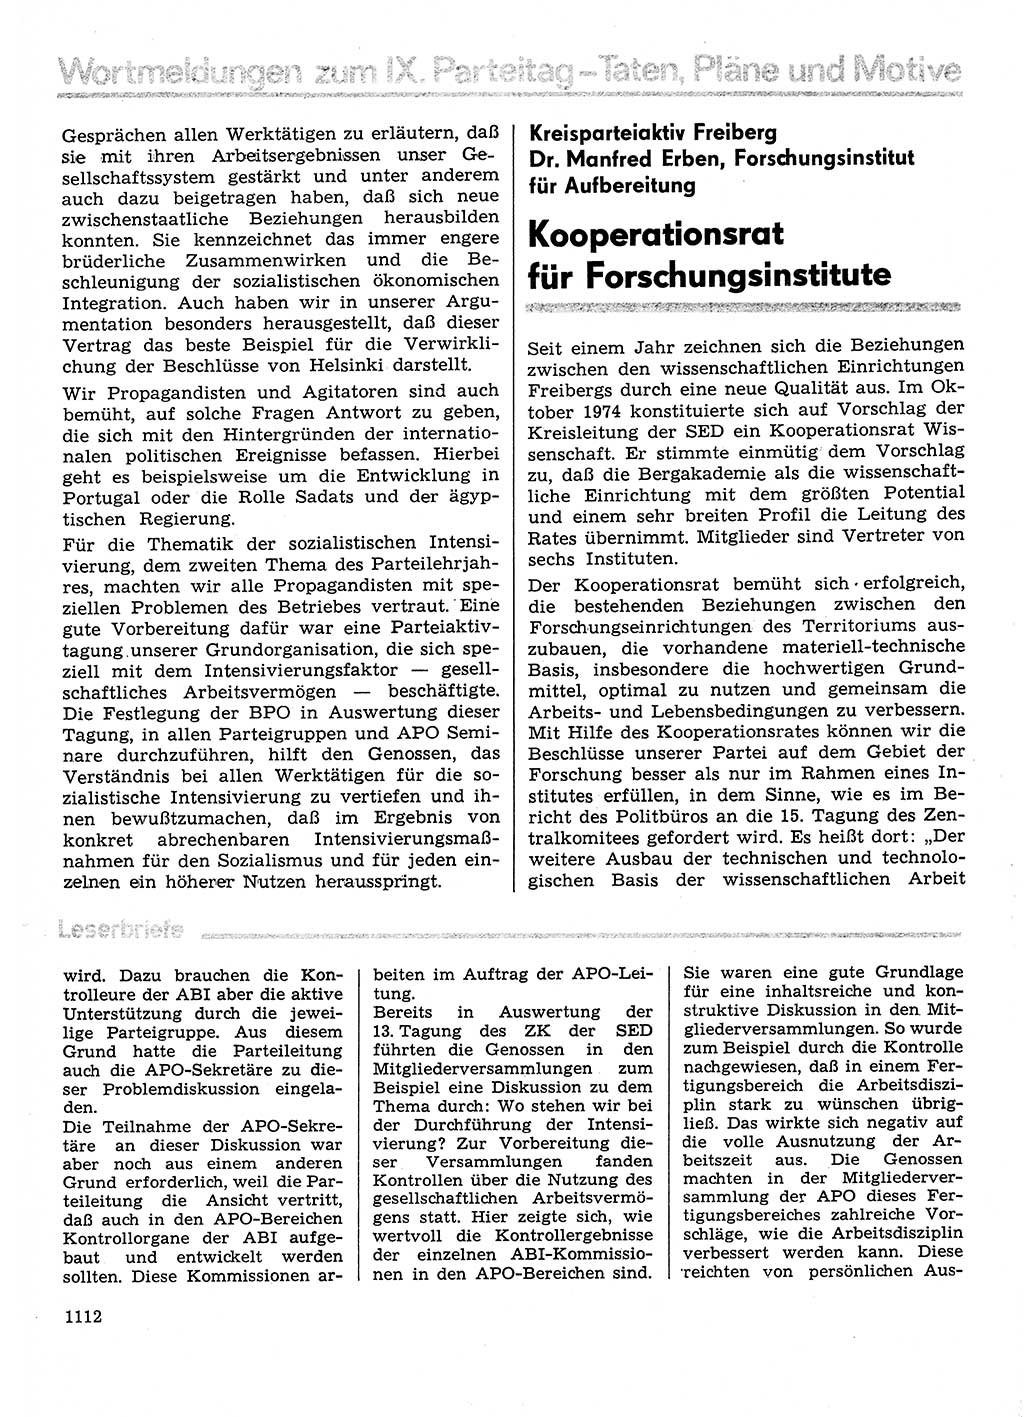 Neuer Weg (NW), Organ des Zentralkomitees (ZK) der SED (Sozialistische Einheitspartei Deutschlands) für Fragen des Parteilebens, 30. Jahrgang [Deutsche Demokratische Republik (DDR)] 1975, Seite 1112 (NW ZK SED DDR 1975, S. 1112)